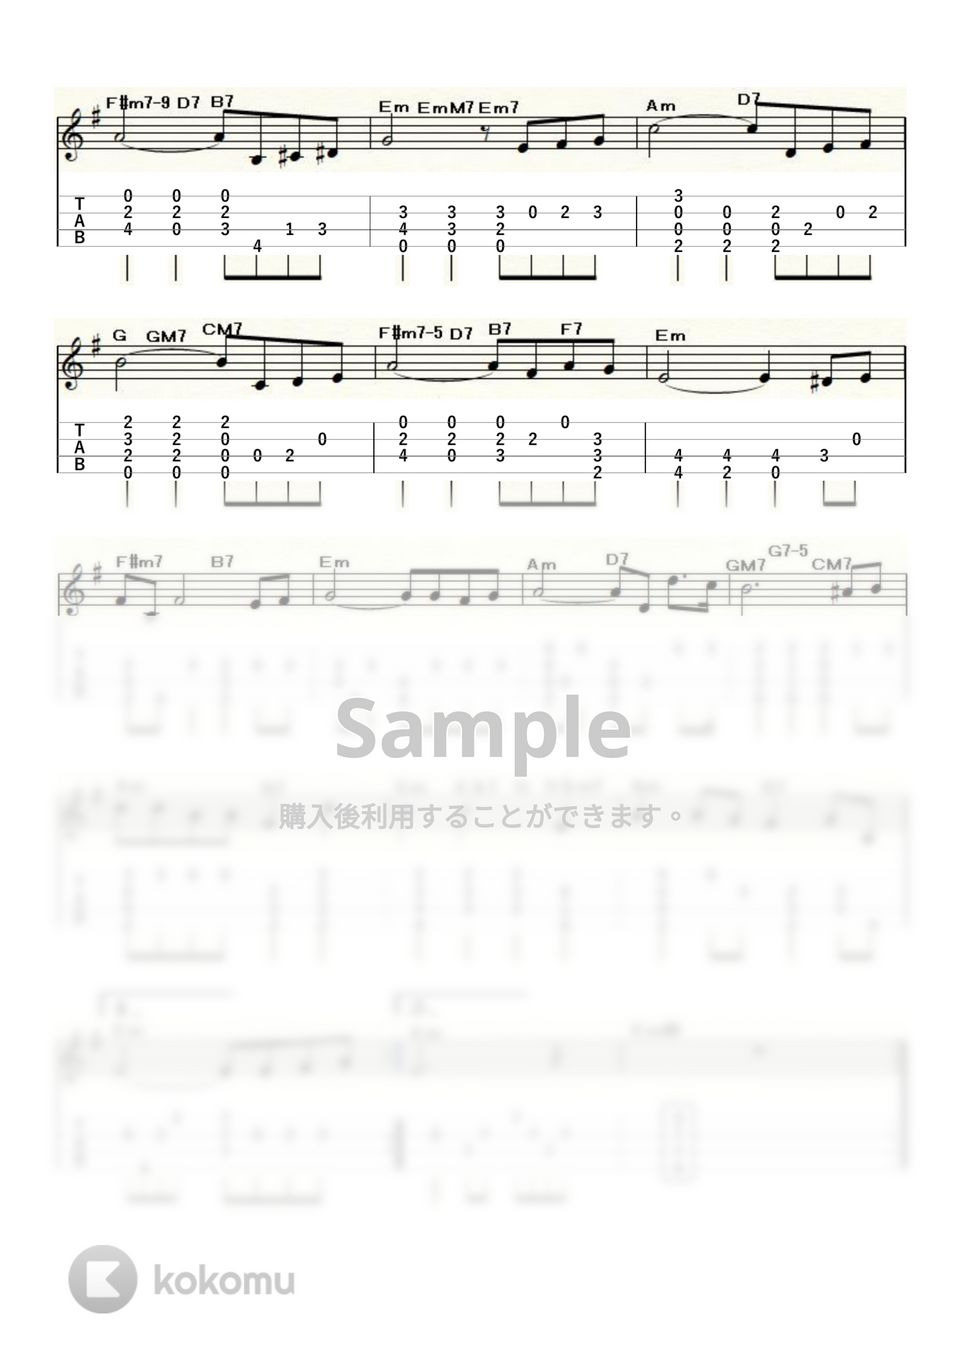 ジョゼフ・コズマ - 枯葉〈Autum Leaves〉 (ｳｸﾚﾚｿﾛ / Low-G / 中級～上級) by ukulelepapa